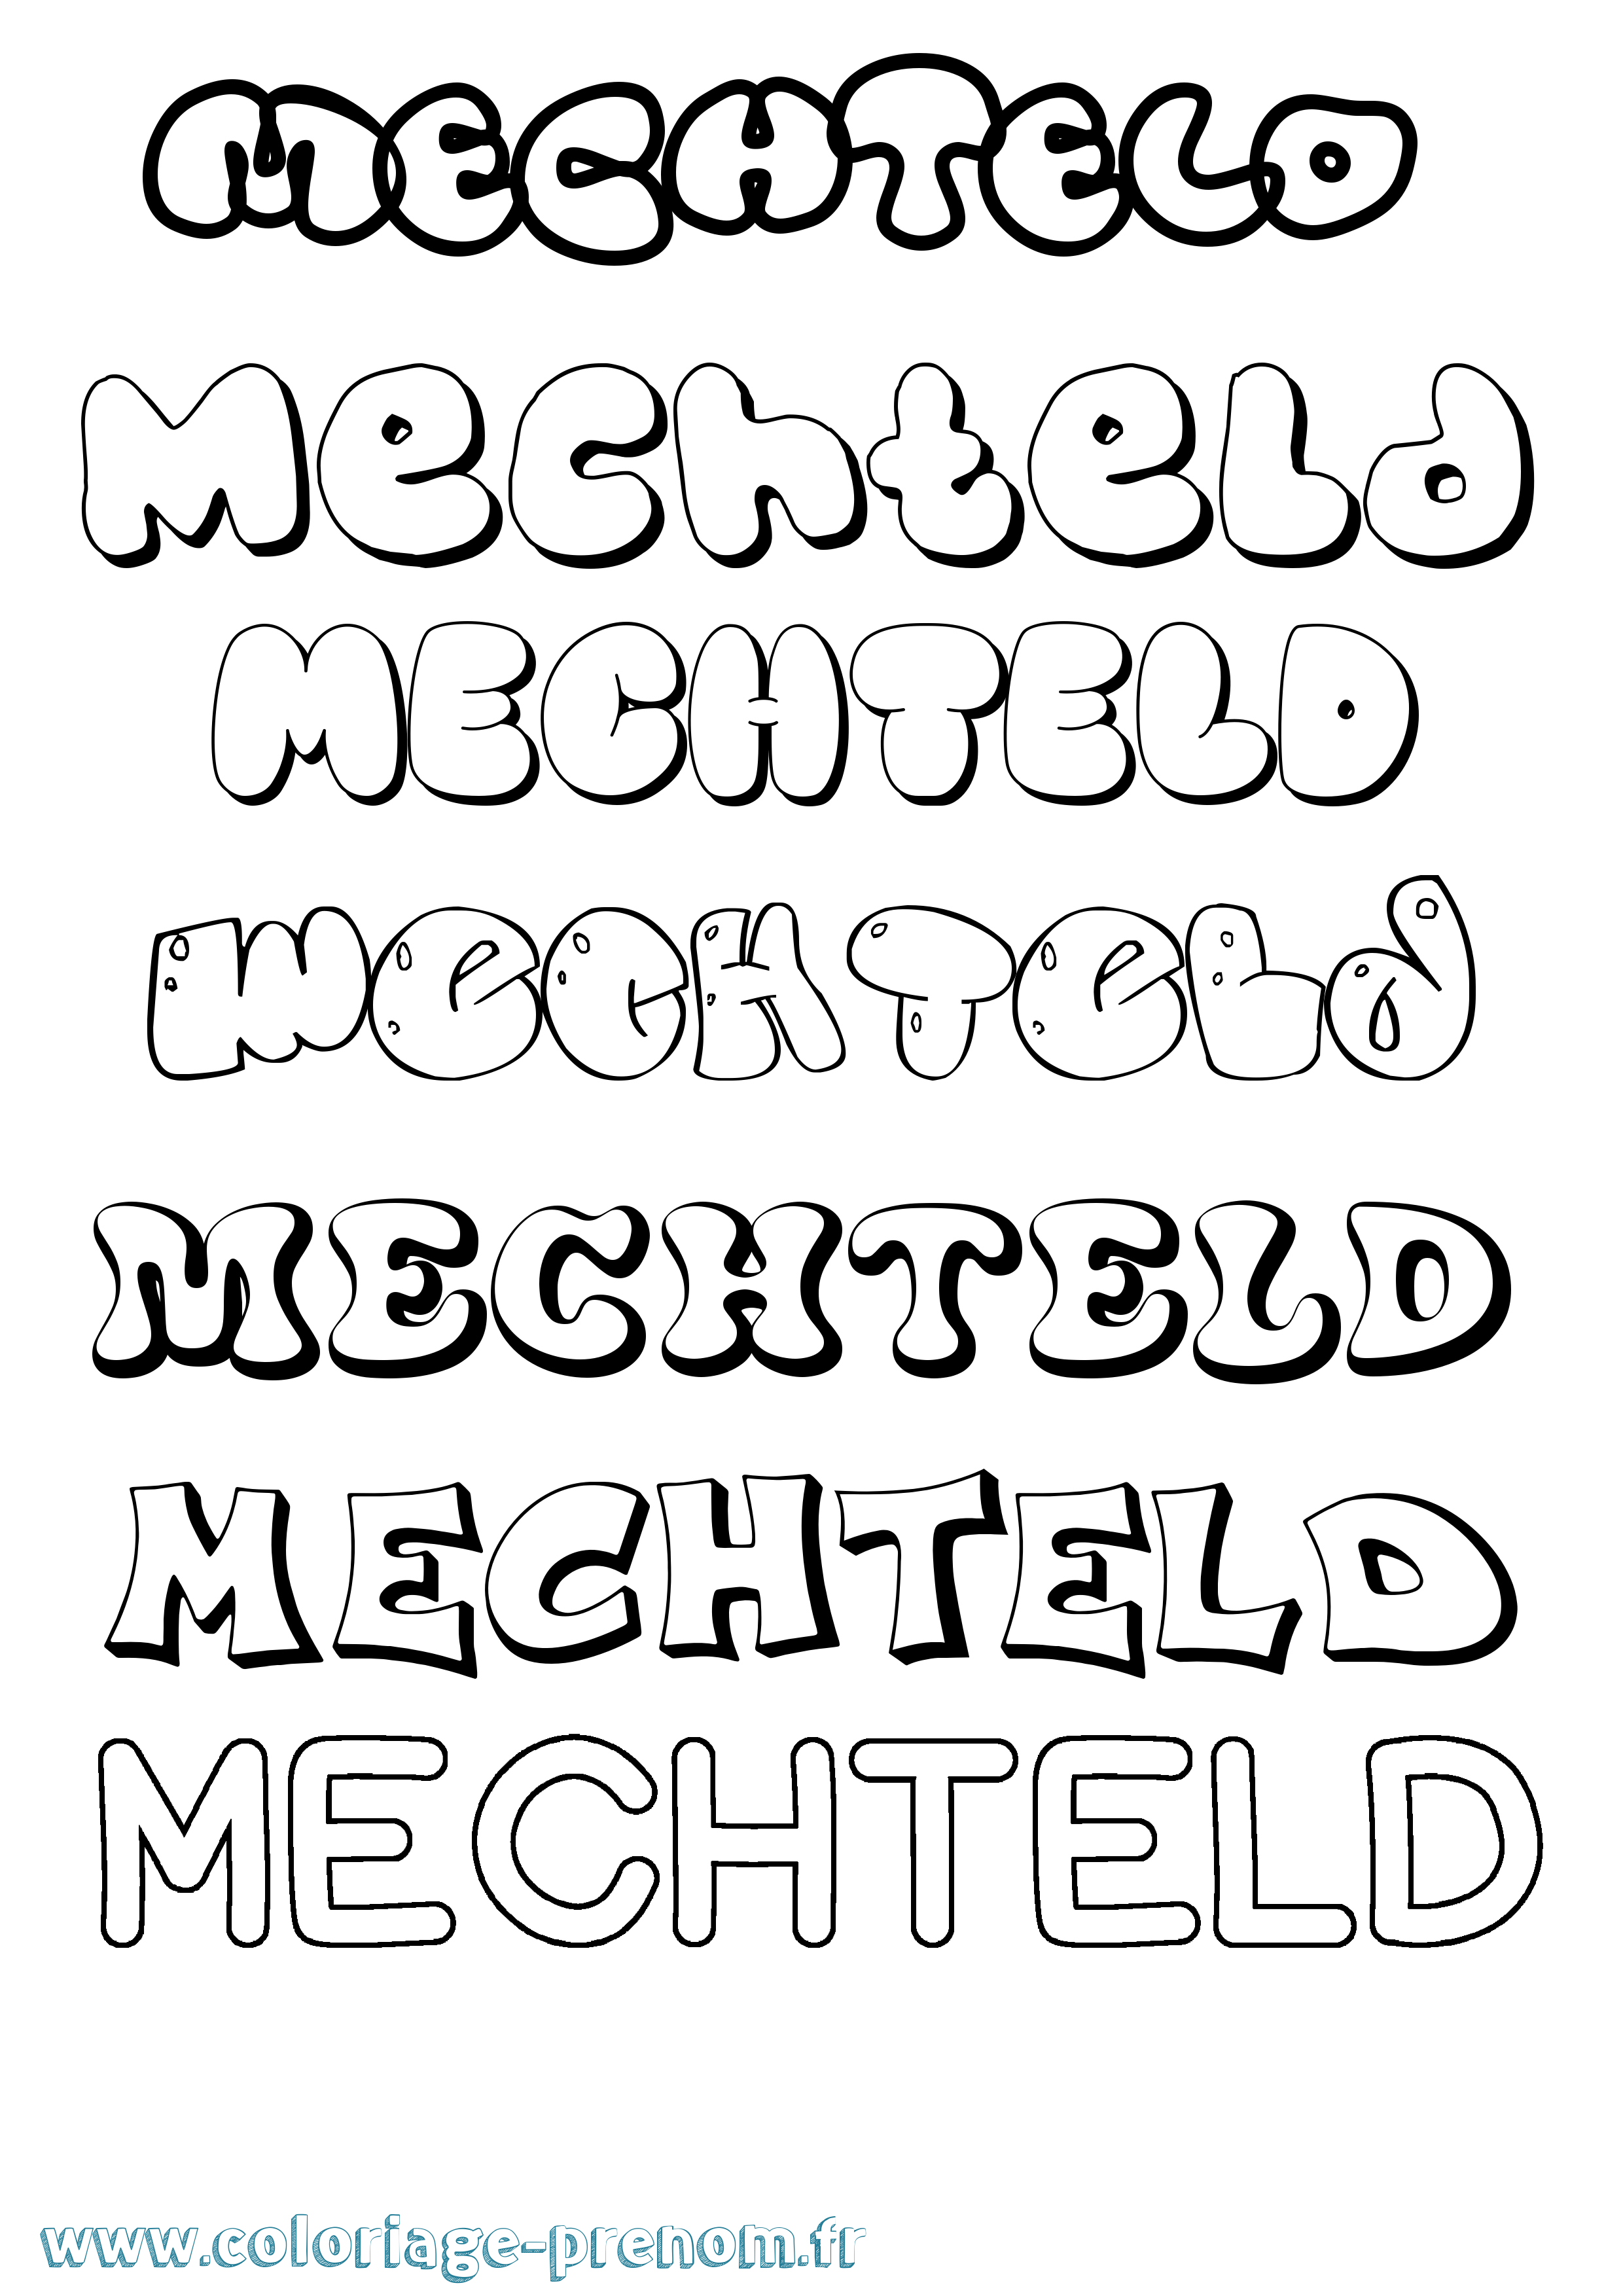 Coloriage prénom Mechteld Bubble